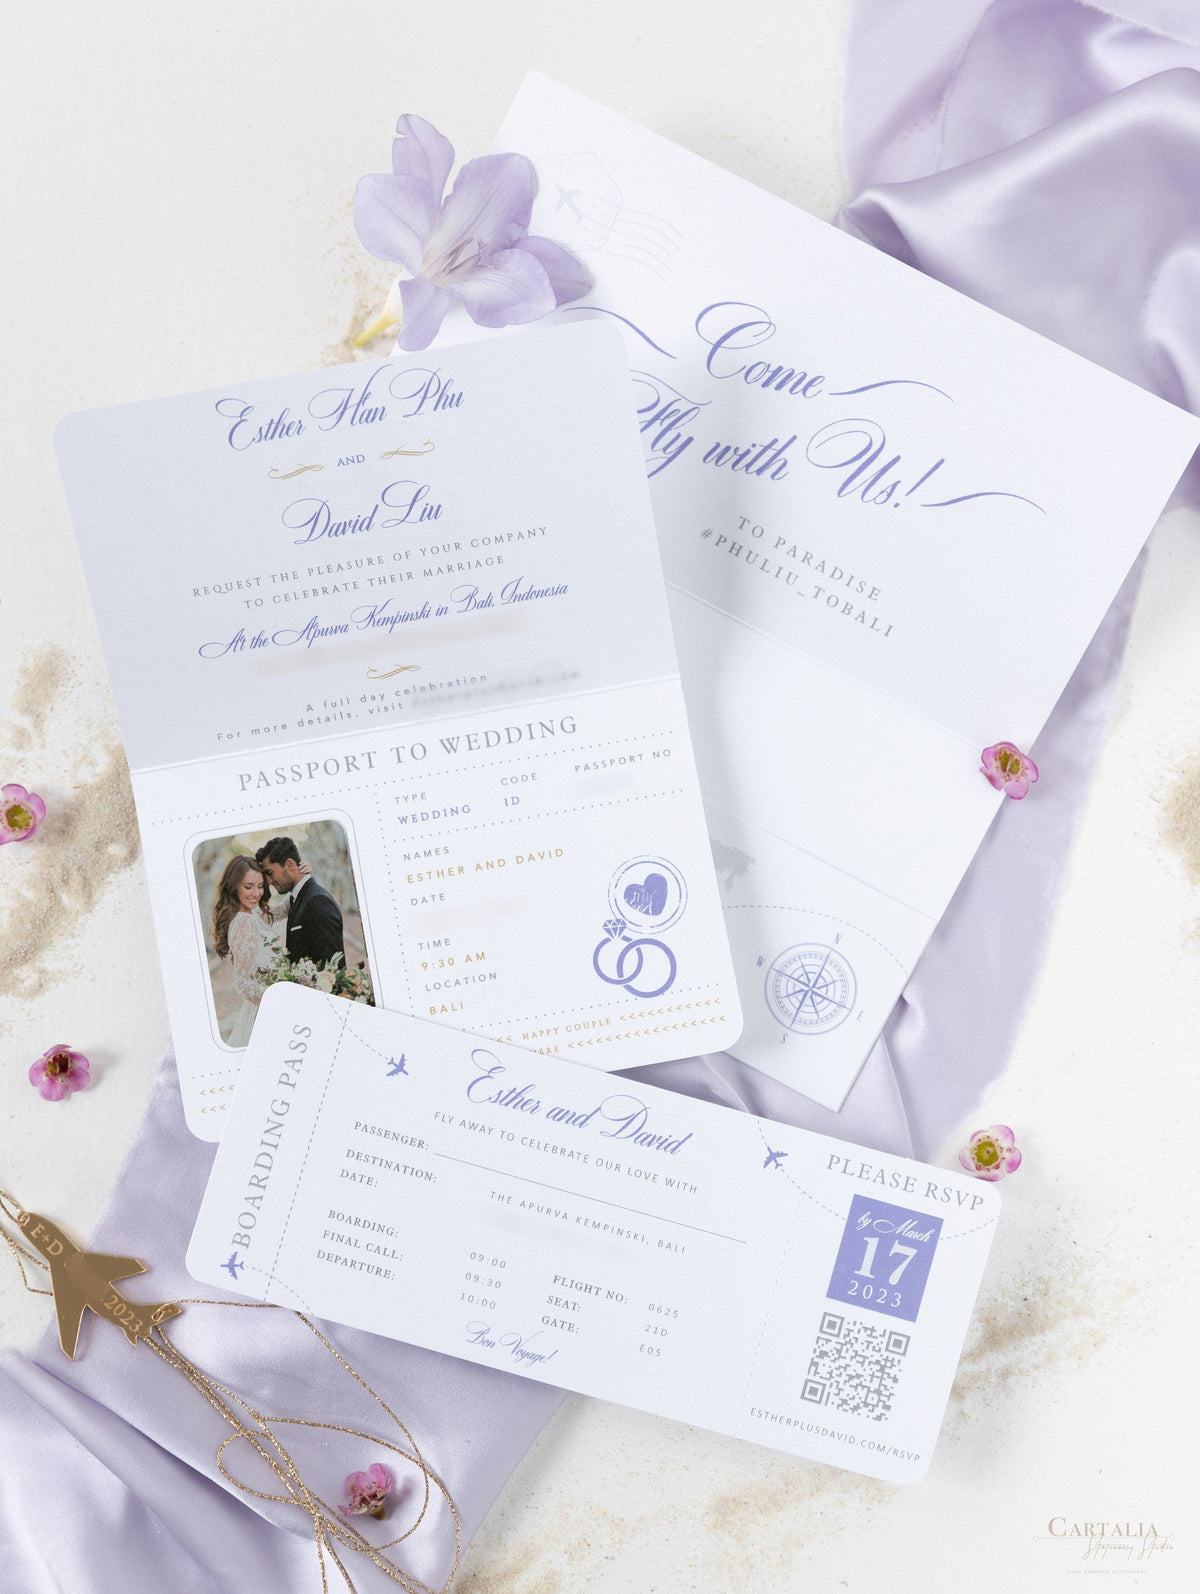 Cartera Lila FOLDER: Invitación de pasaporte de boda plateada de lujo en suite de invitación de pasaporte con etiqueta plana de bolsillo y espejo